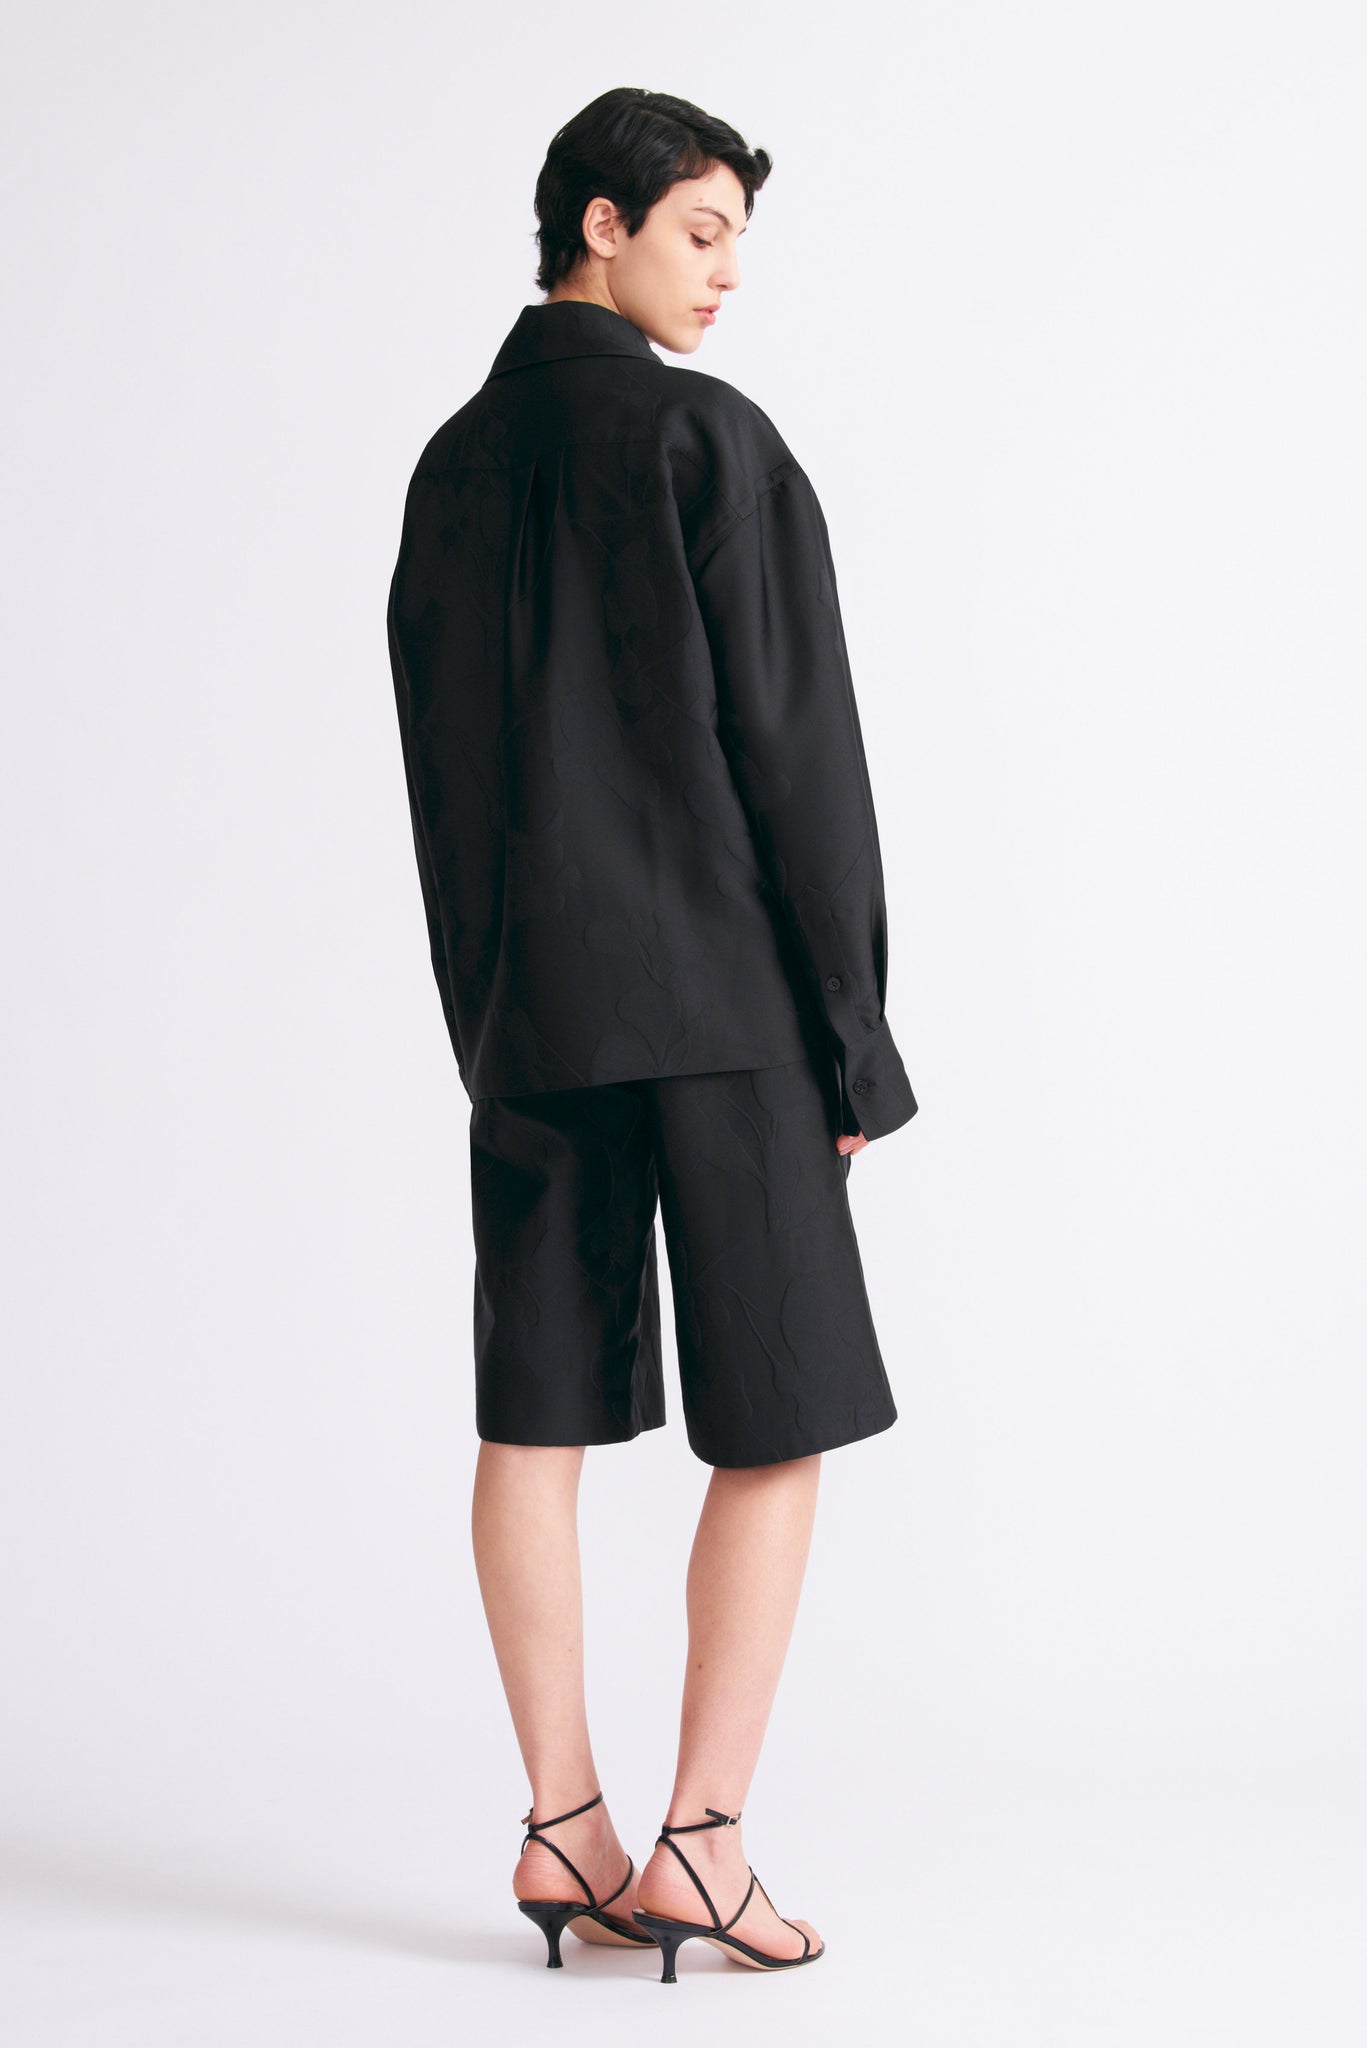 Apera Shorts in Black Floral Embossed Cloque | Emilia Wickstead